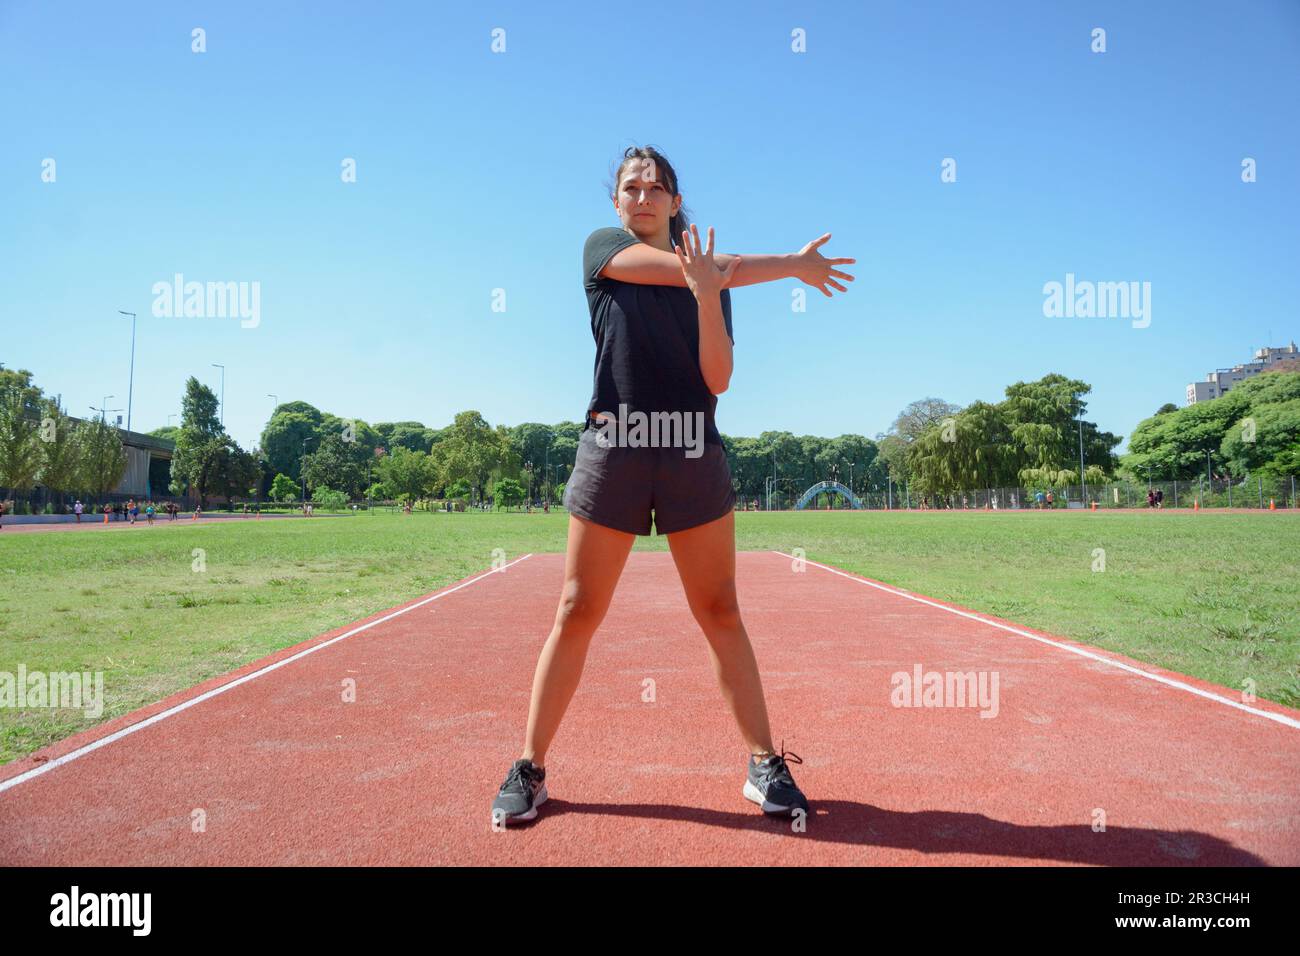 vue avant de la jeune femme latine s'entraîner sur le circuit sportif, faire des étirements de bras, se tenir sur la piste se réchauffer en préparation pour courir. Banque D'Images